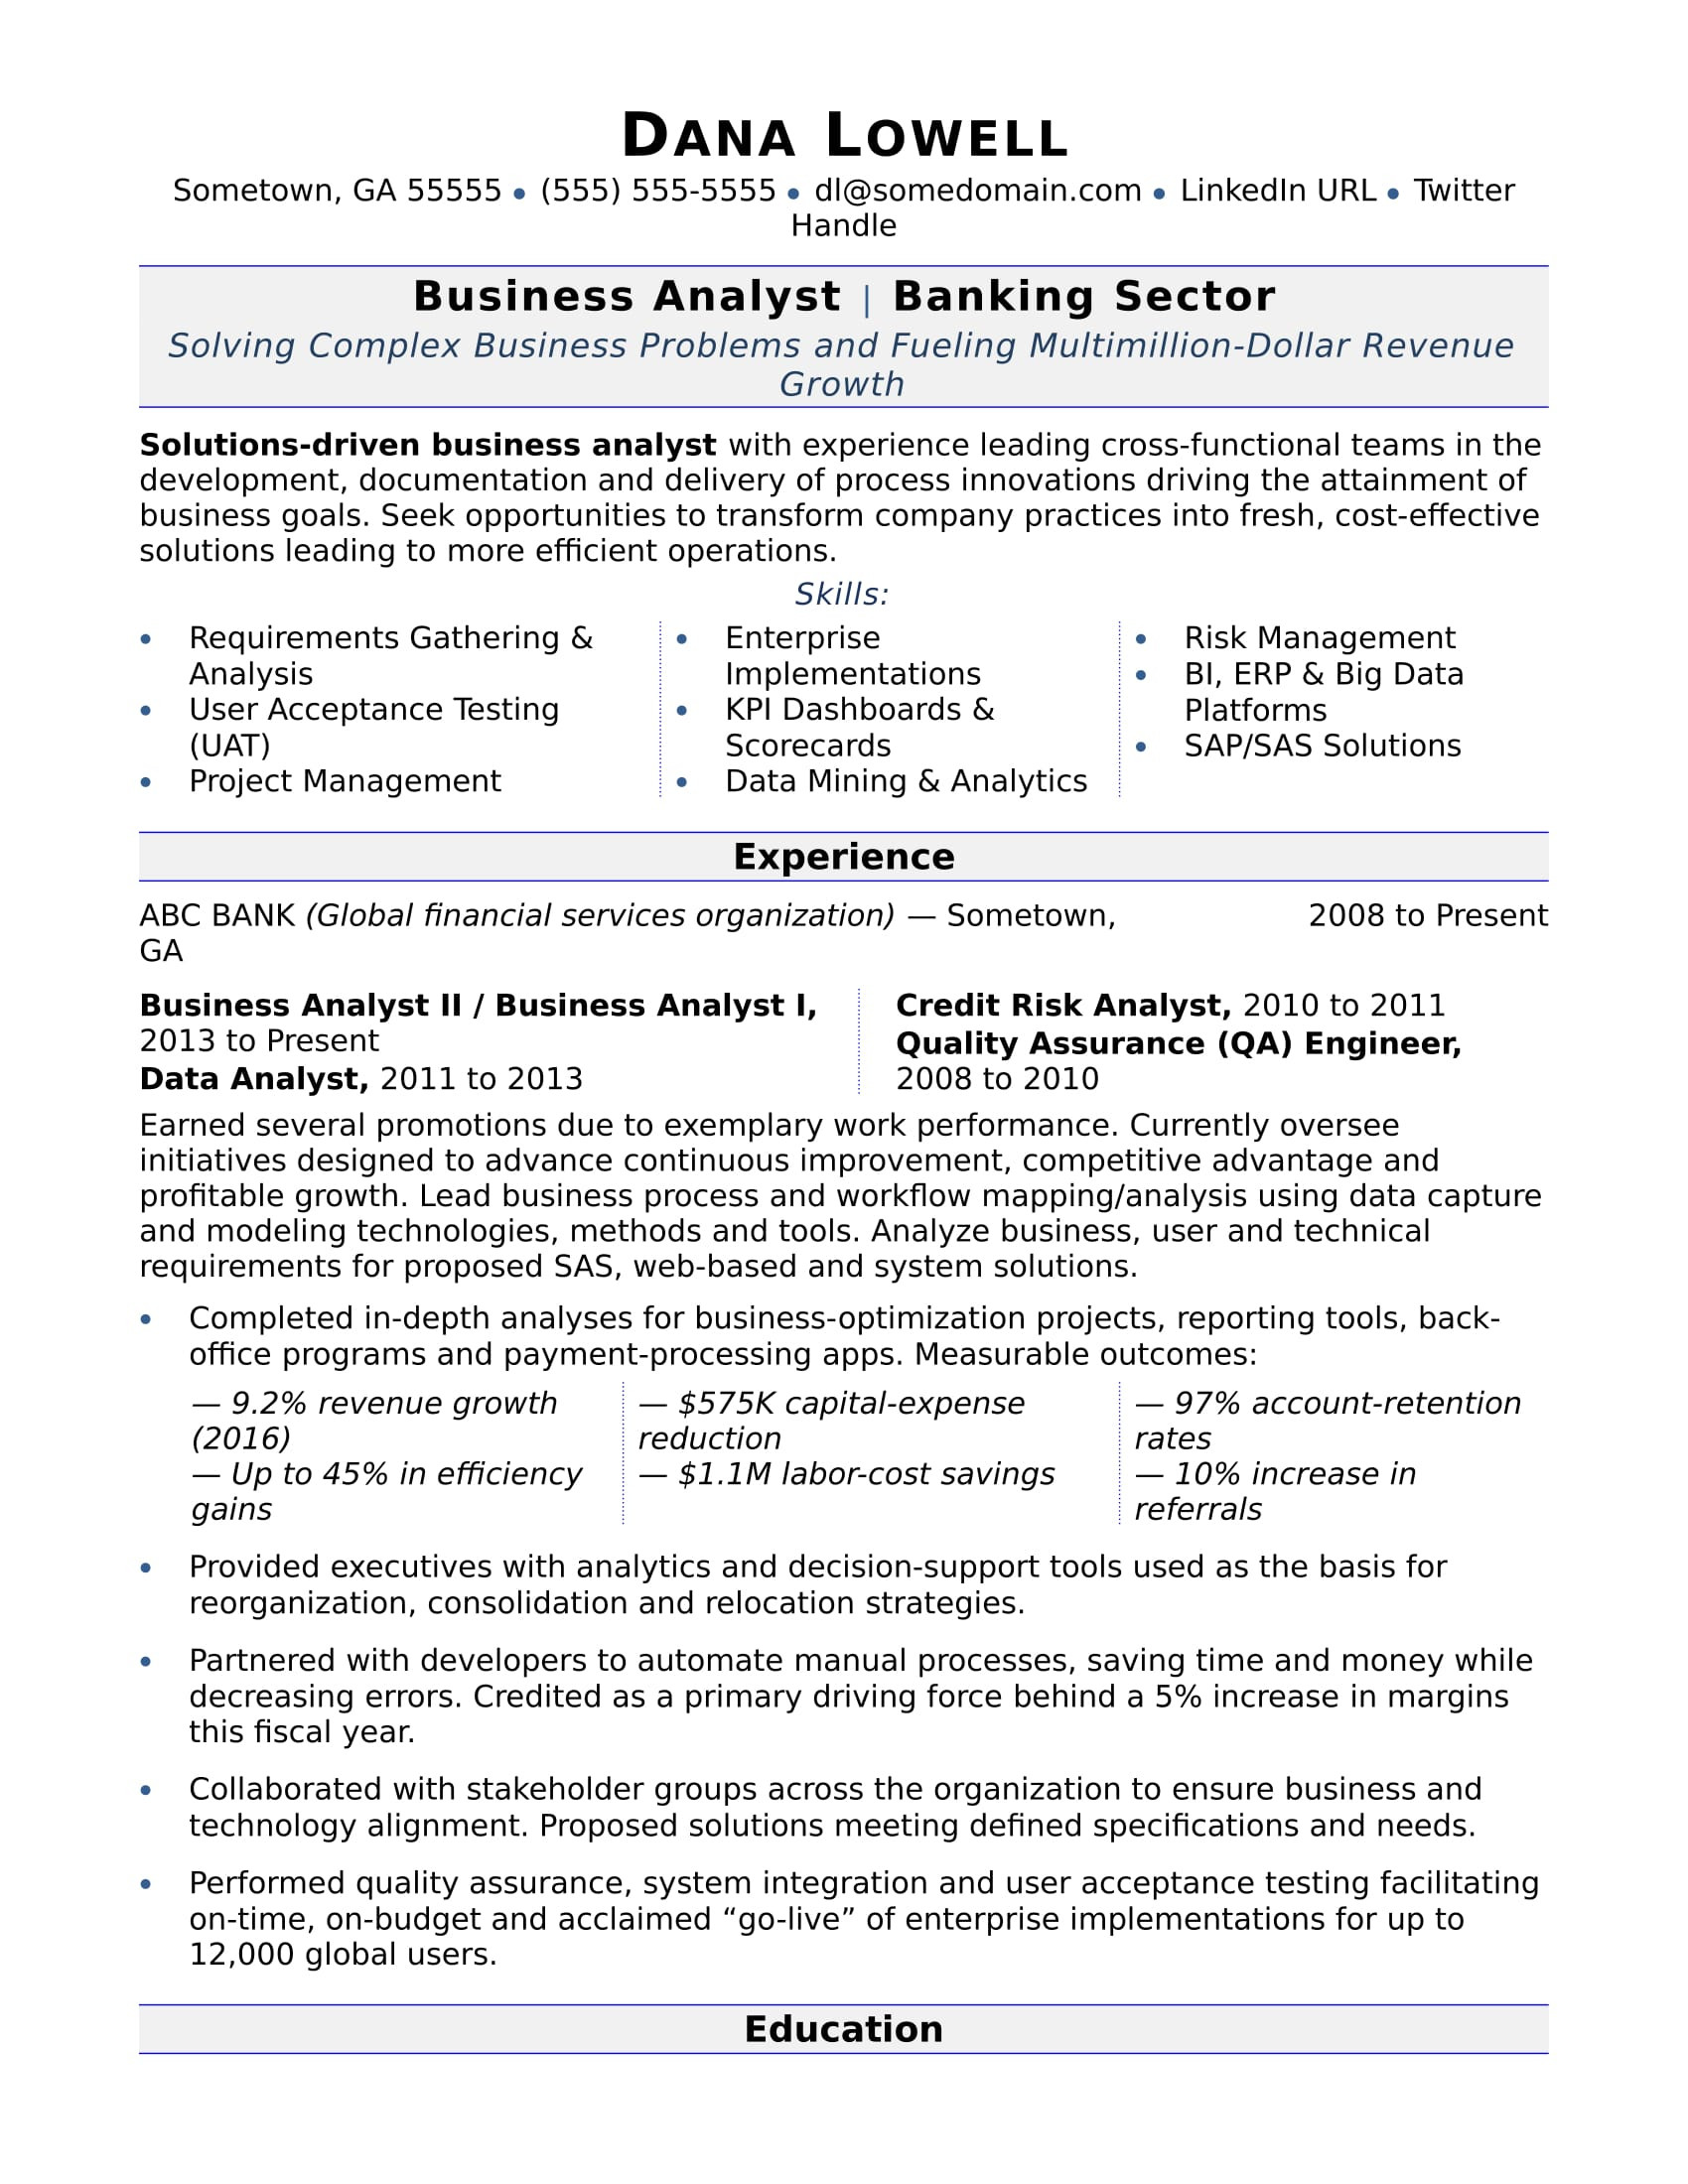 Business Analyst Resume Sample Velvet Jobs Business Analyst Resume Monster.com